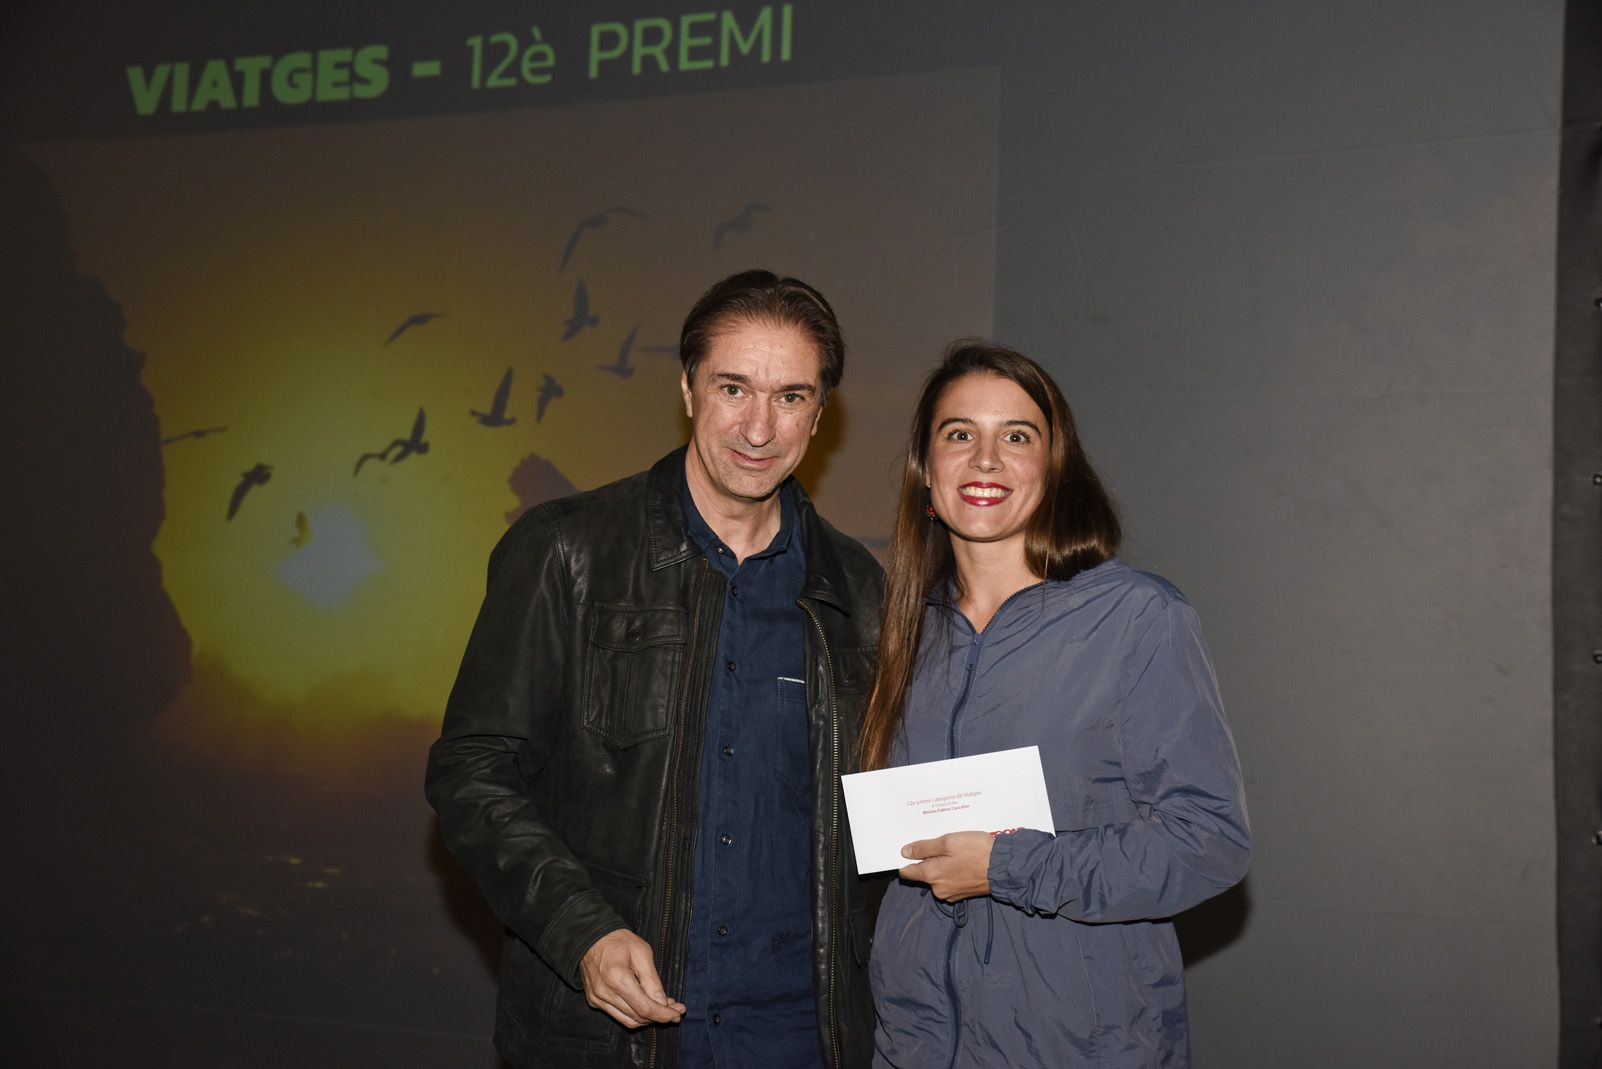 12è premi ‘Viatges’ Miriam Pablos Cascallar - Volant. Foto: Bernat Millet.